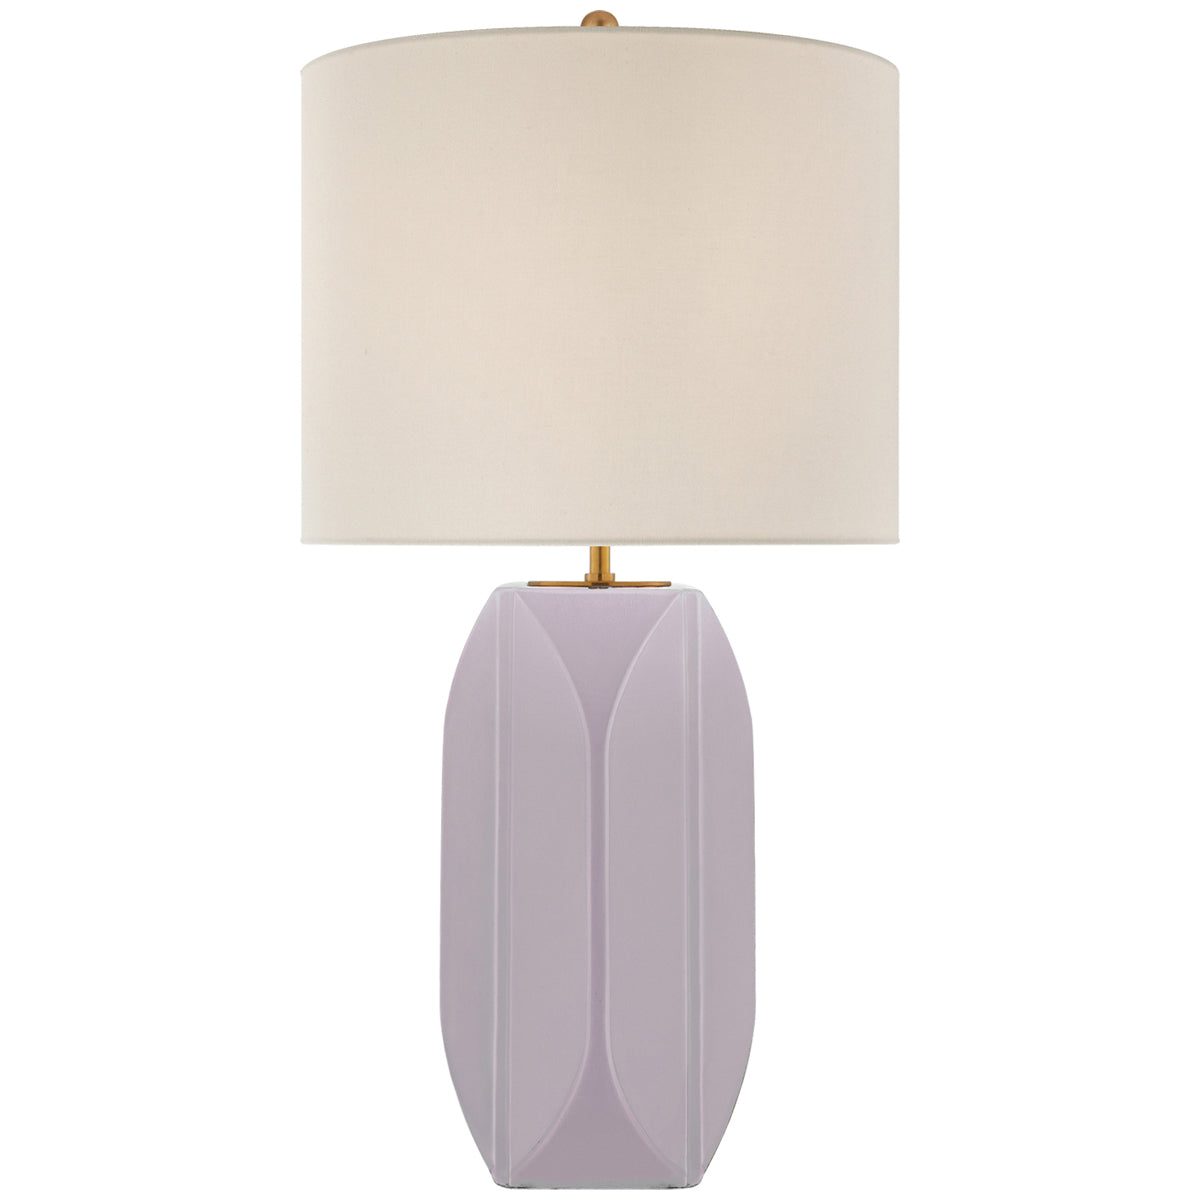 Visual Comfort Carmilla Medium Table Lamp